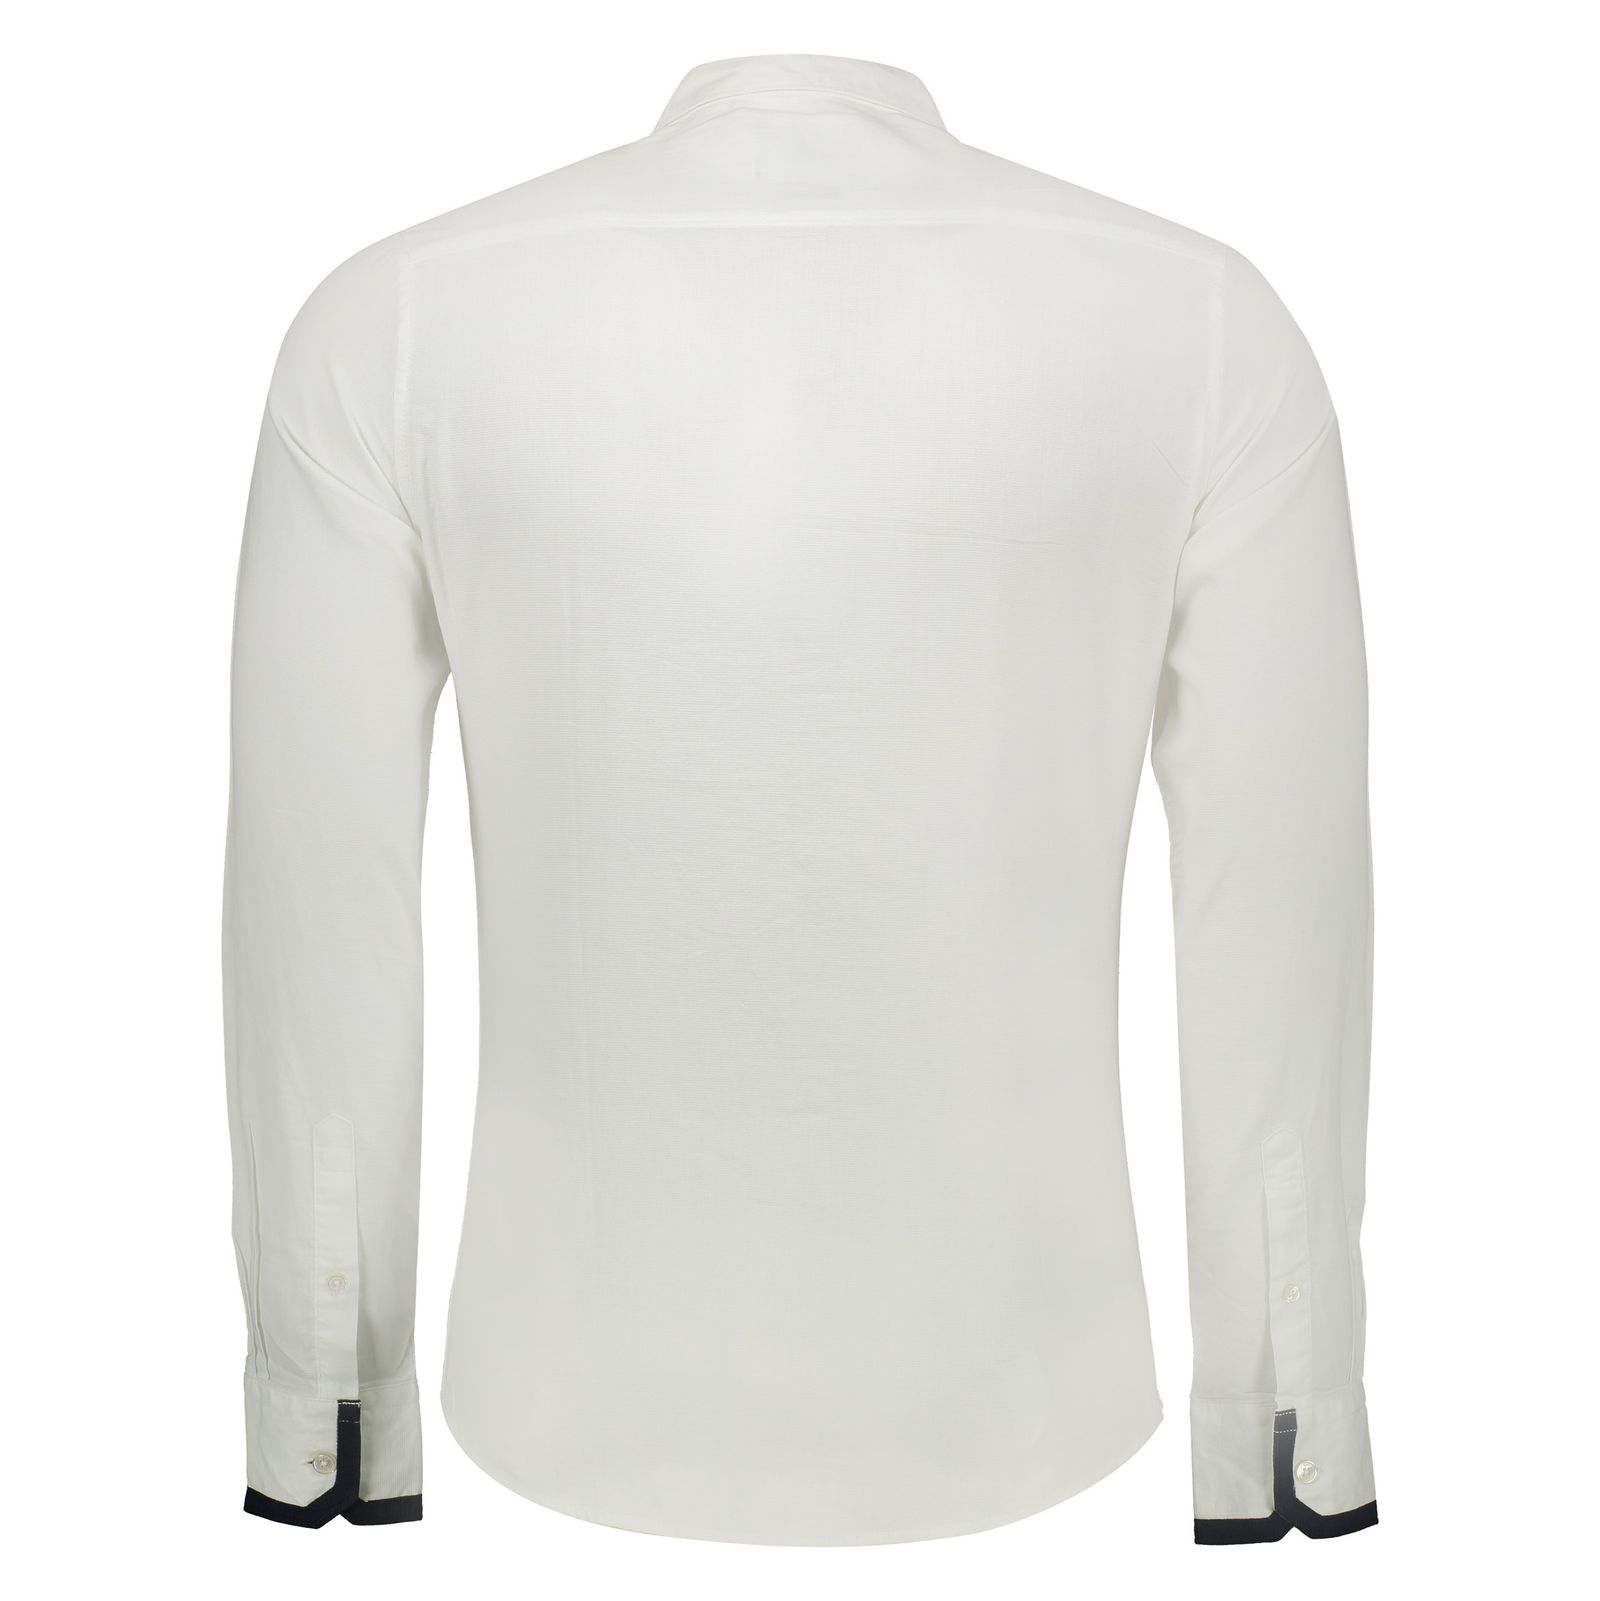 پیراهن مردانه اسپرینگ فیلد مدل 1506668-99 - سفید - 4